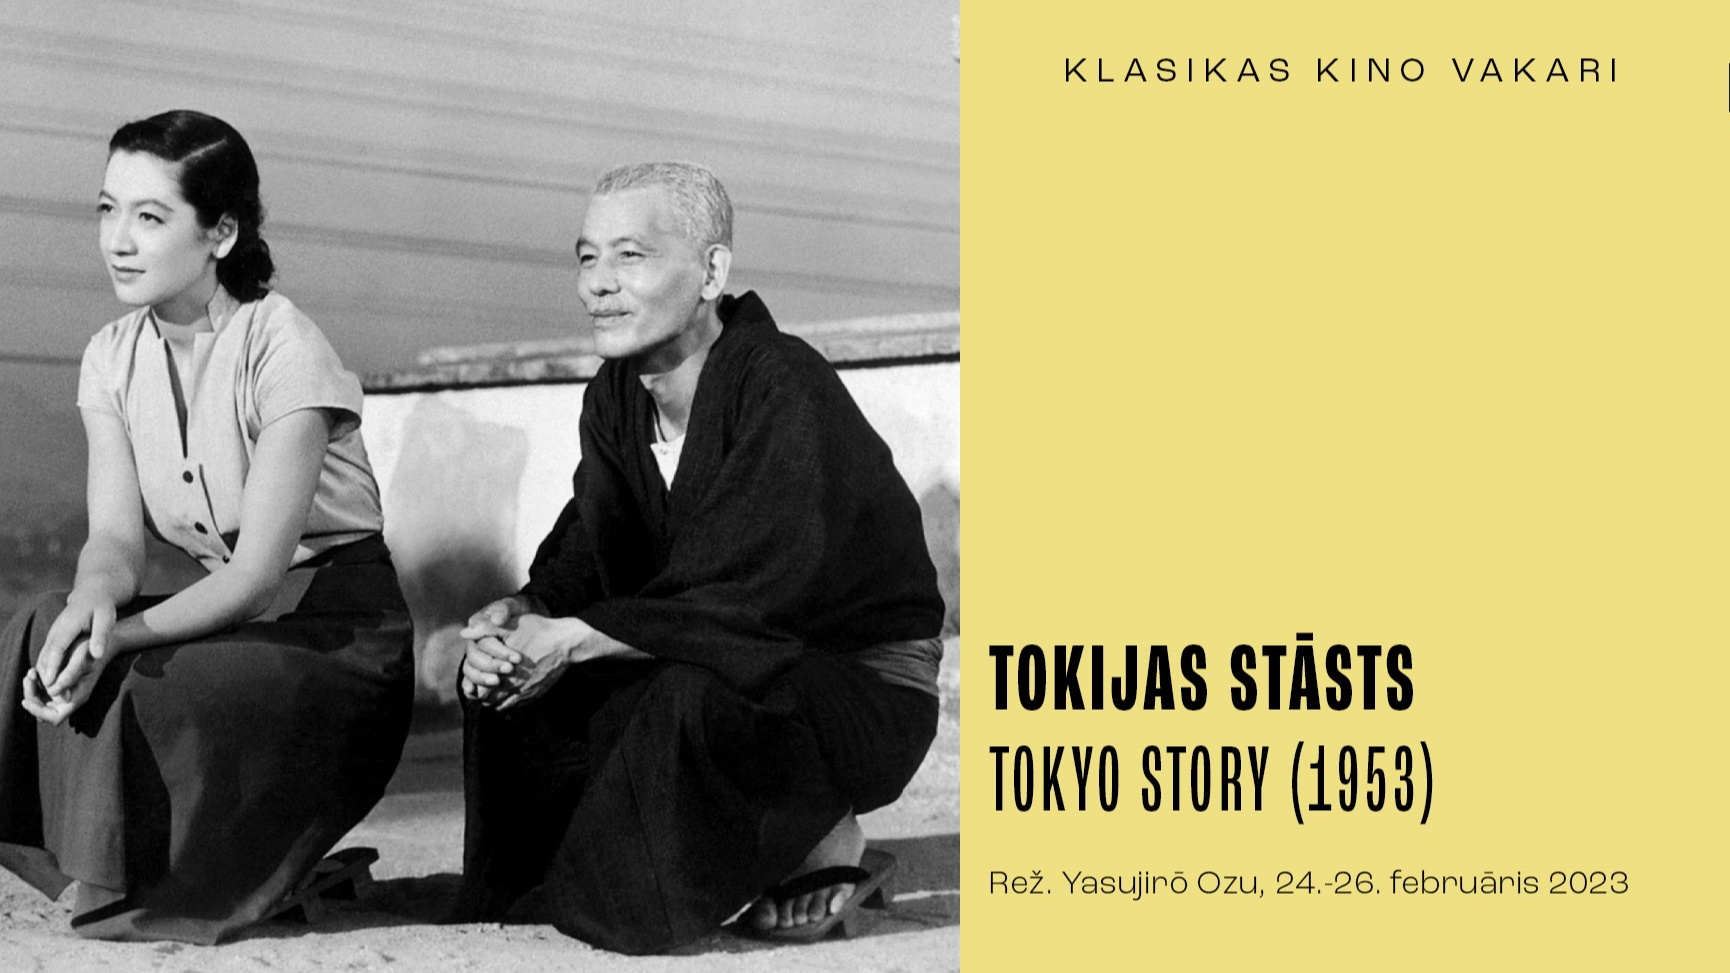 “Klasikas kino vakaru” programmā Jasudžiro Odzu “Tokijas stāsts” 